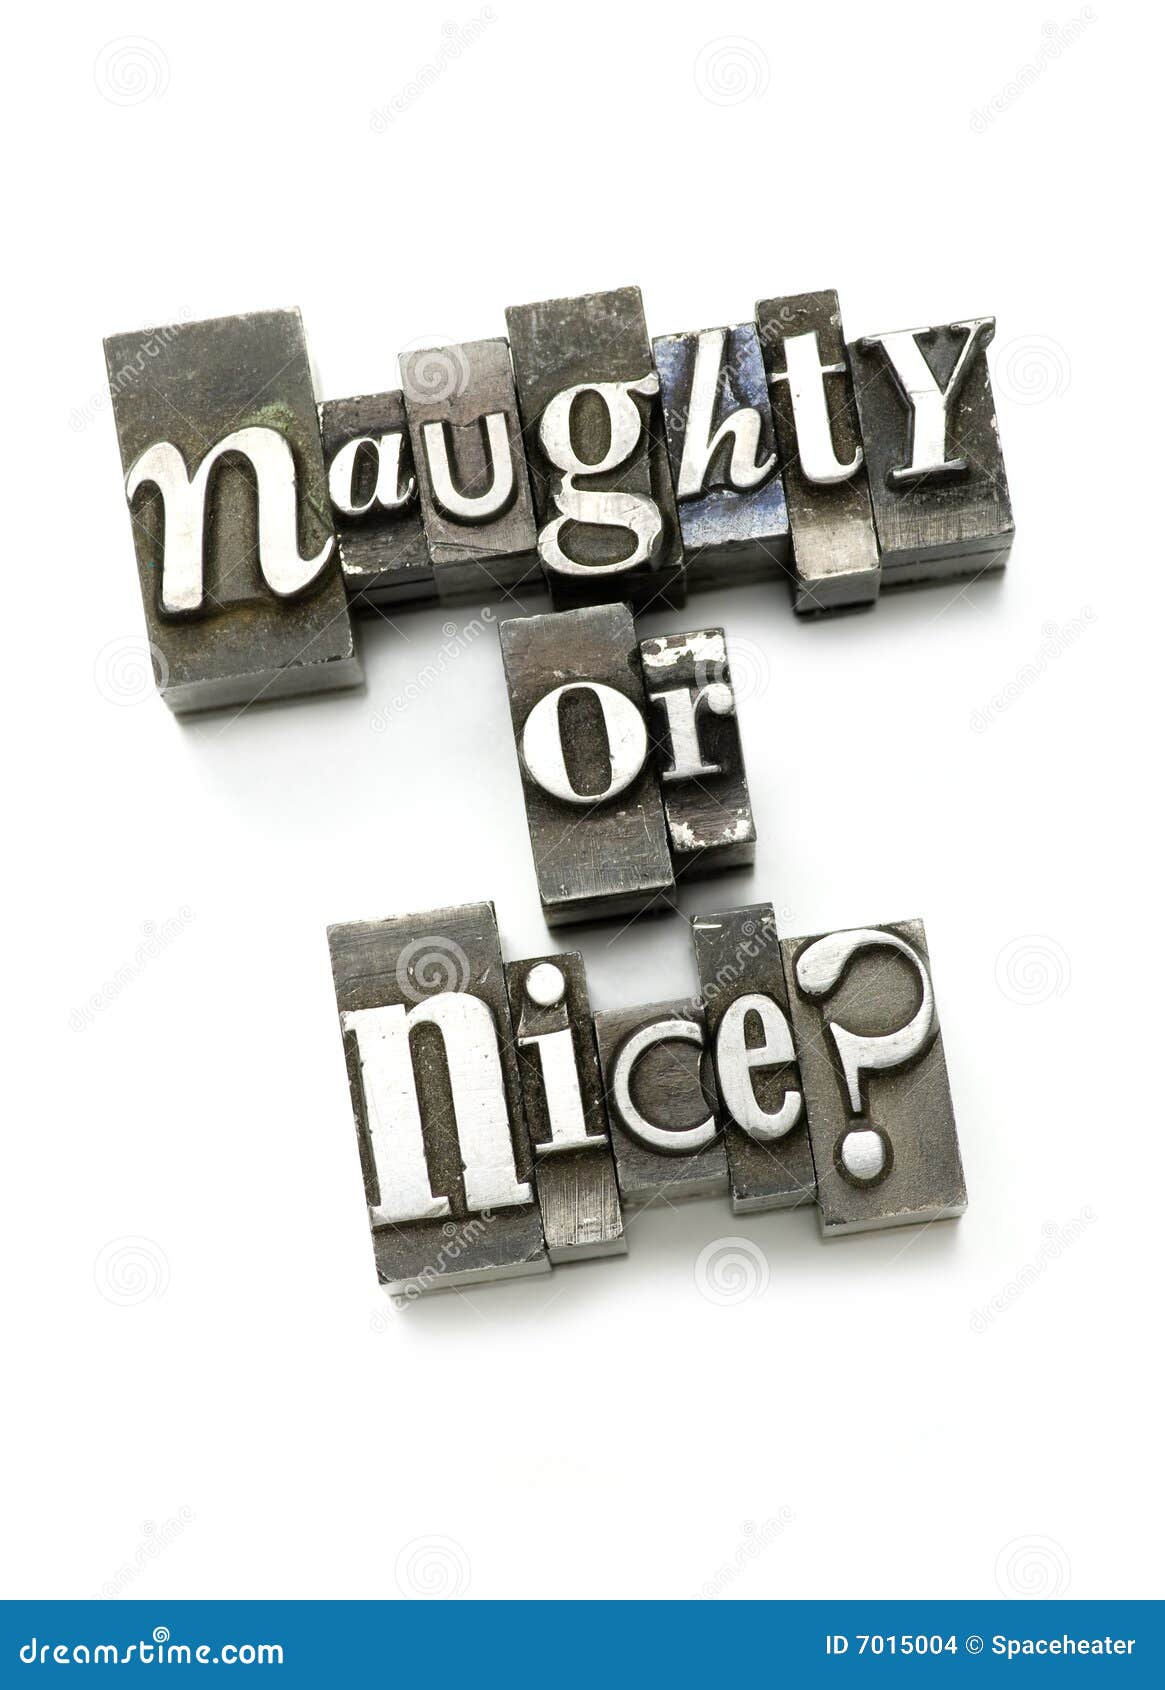 naughty or nice?